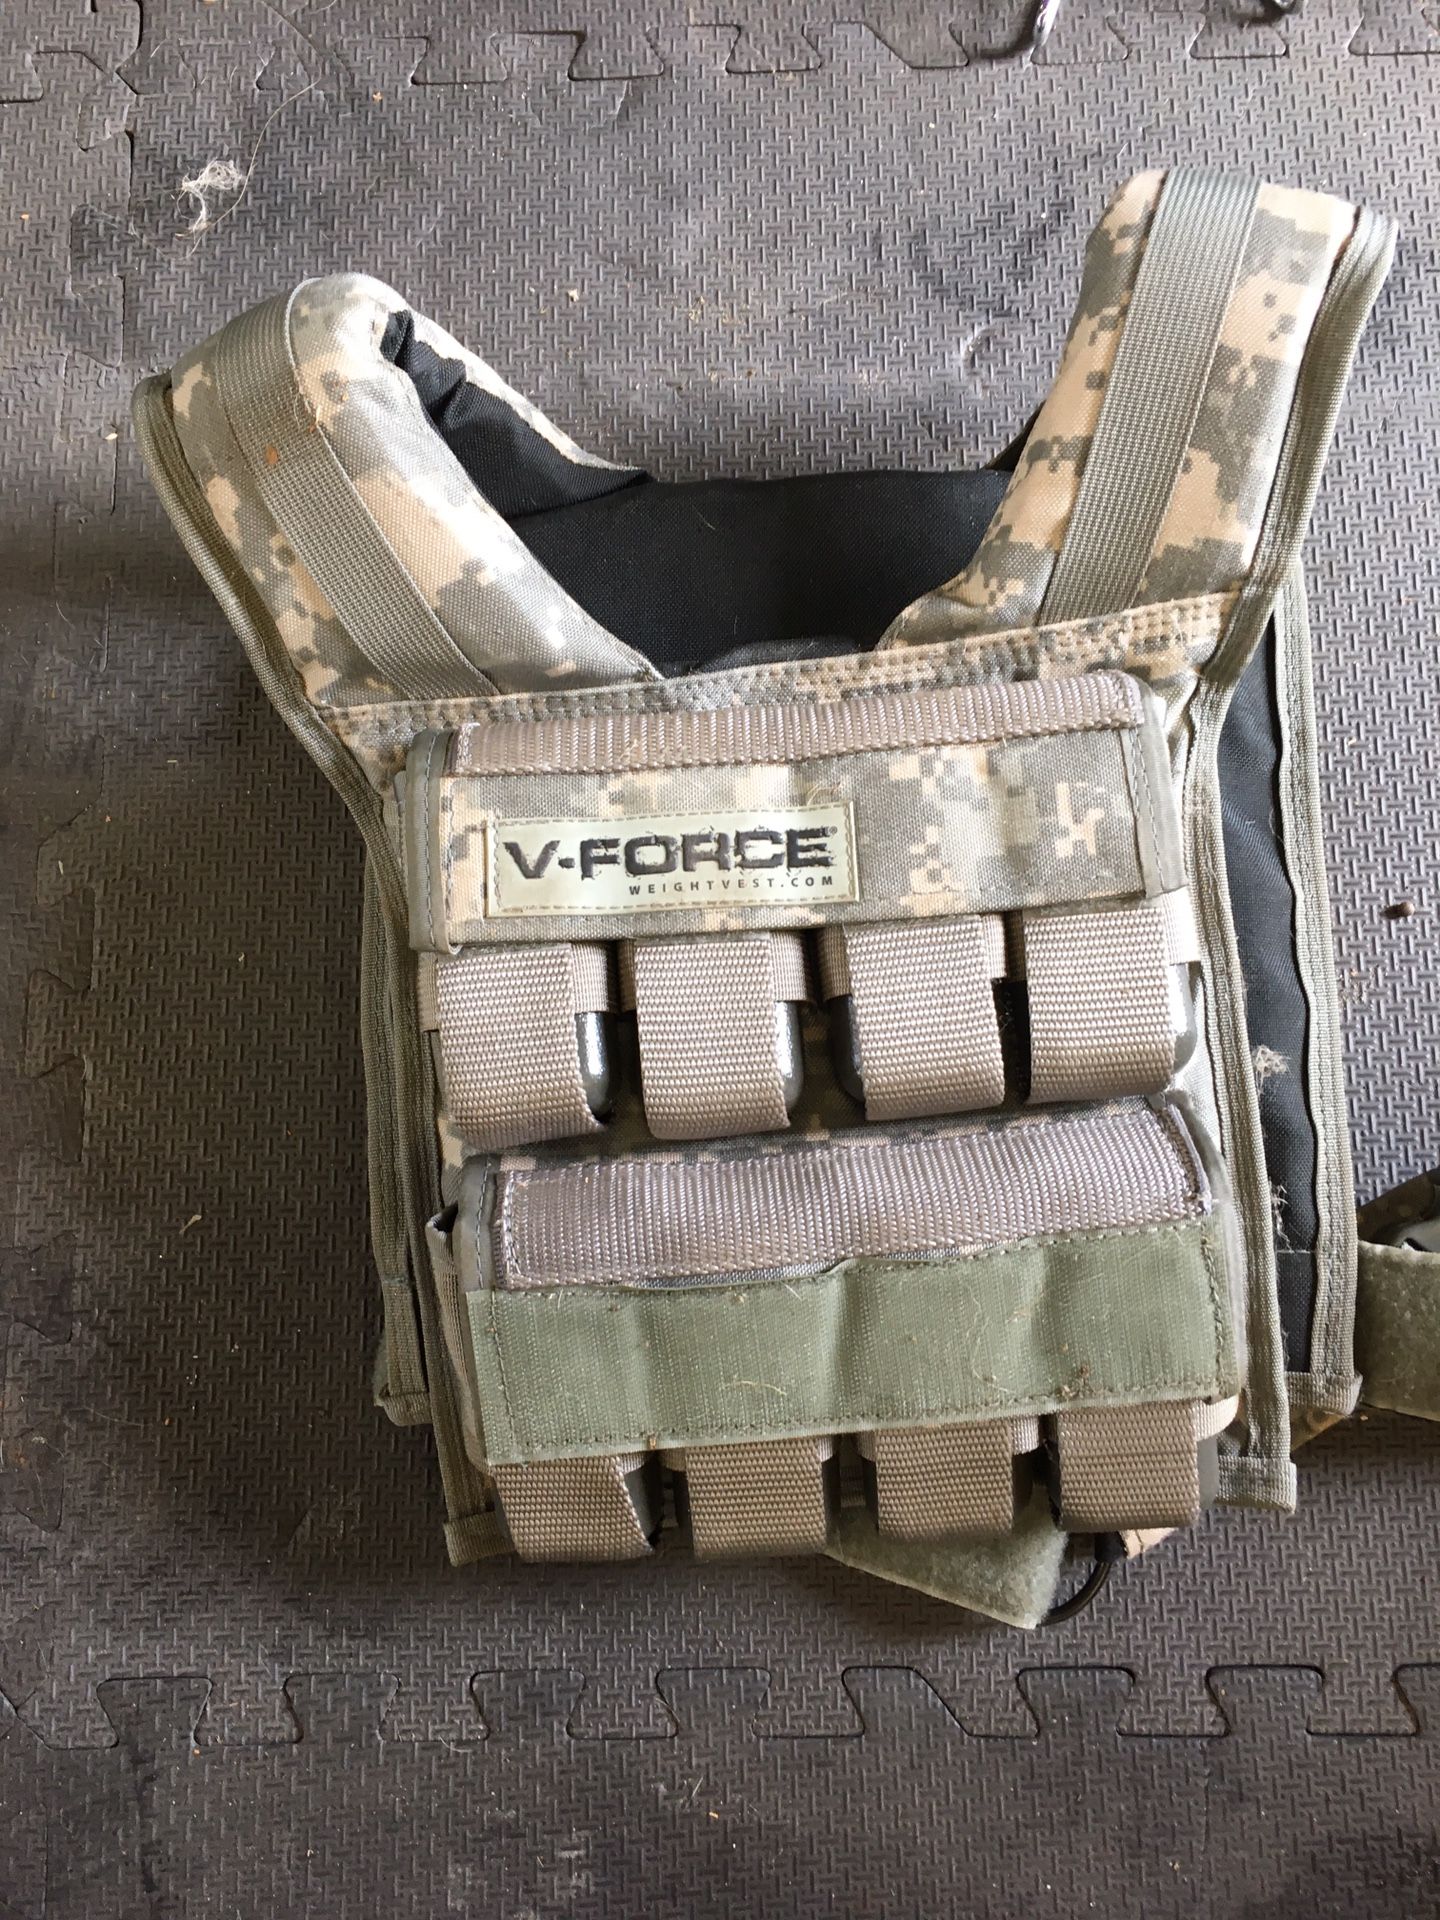 V-Force weighted vest